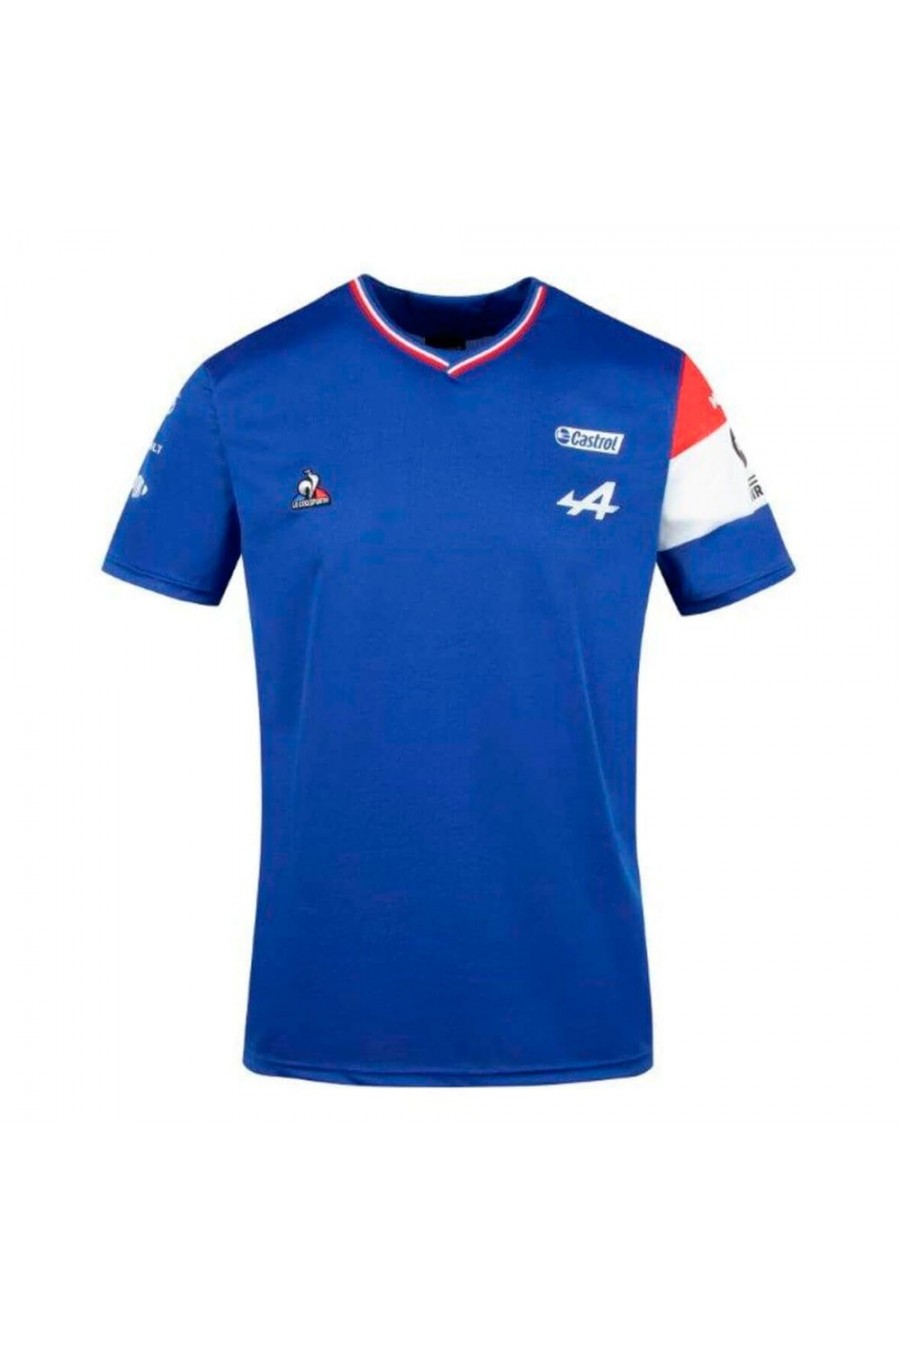 argumento caja registradora enlace Comprar Camiseta Fernando Alonso Alpine F1. Disponible en azul, hombre